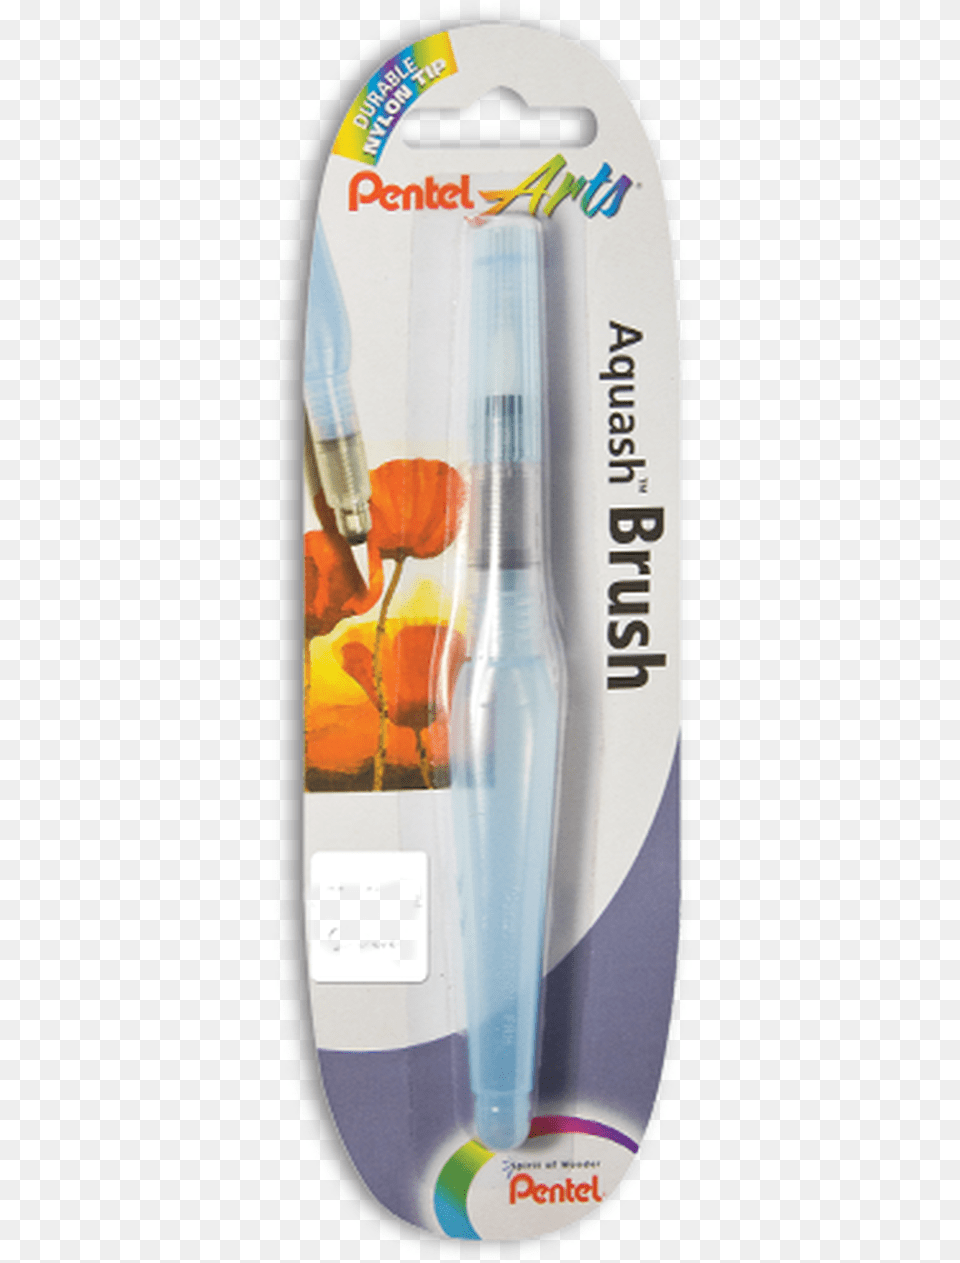 Pentel Aquash Water Brush Pen Glass Bottle, Device, Tool, Toothbrush, Skateboard Free Png